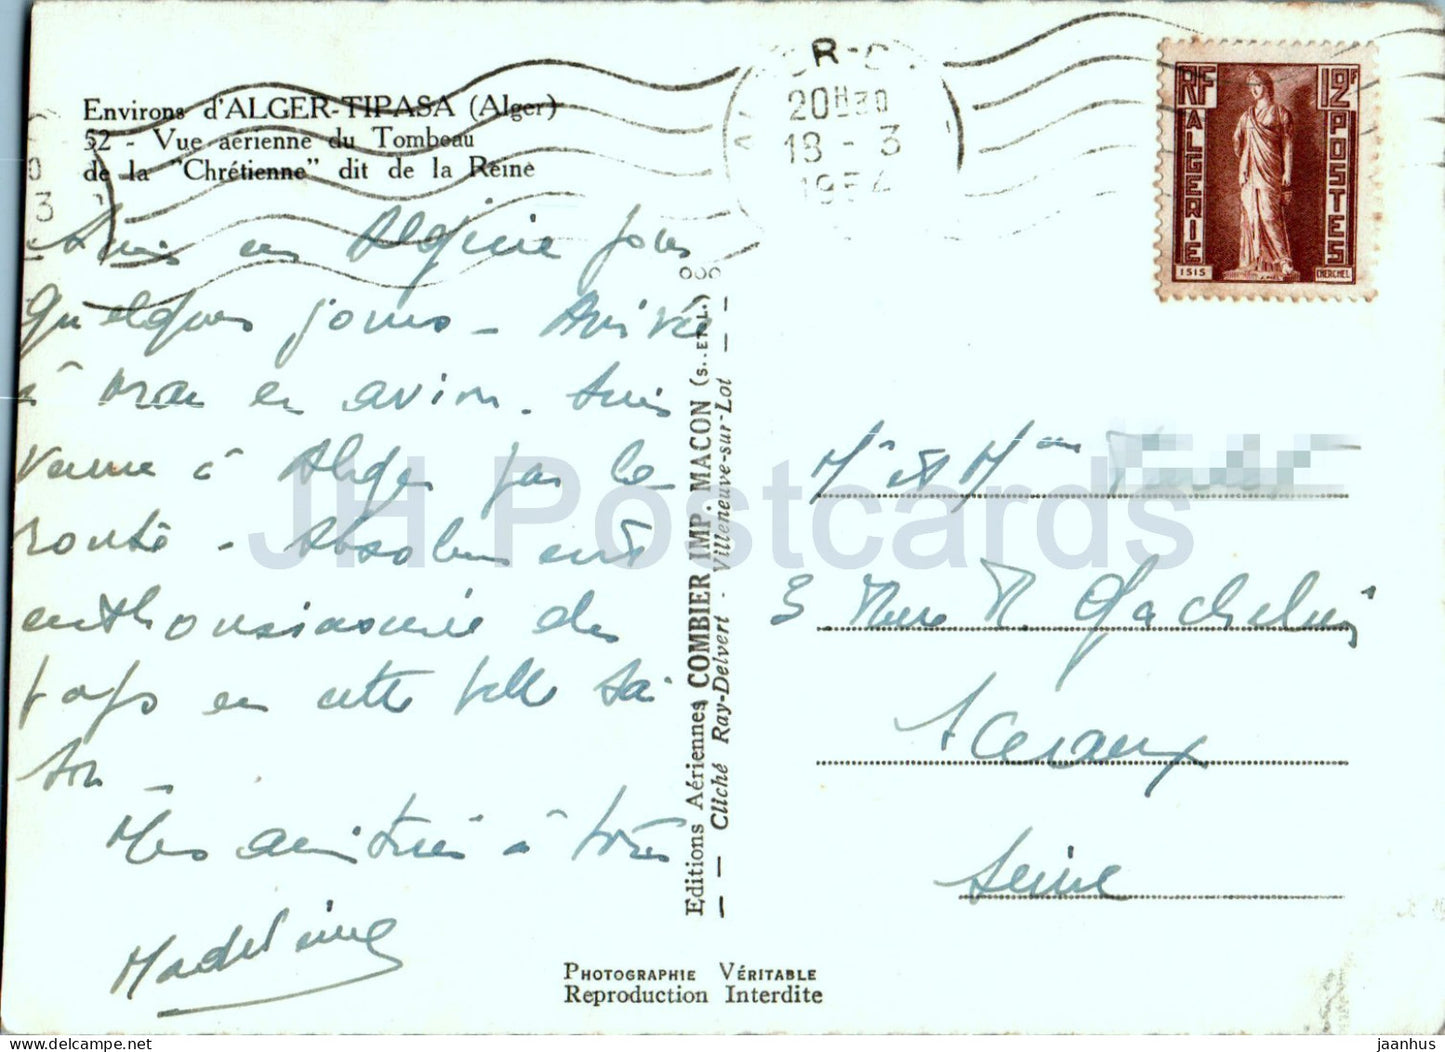 Environs de Alger Tipasa - Mausolée Royal de Maurétanie - 52 - carte postale ancienne - 1954 - Maroc - occasion 